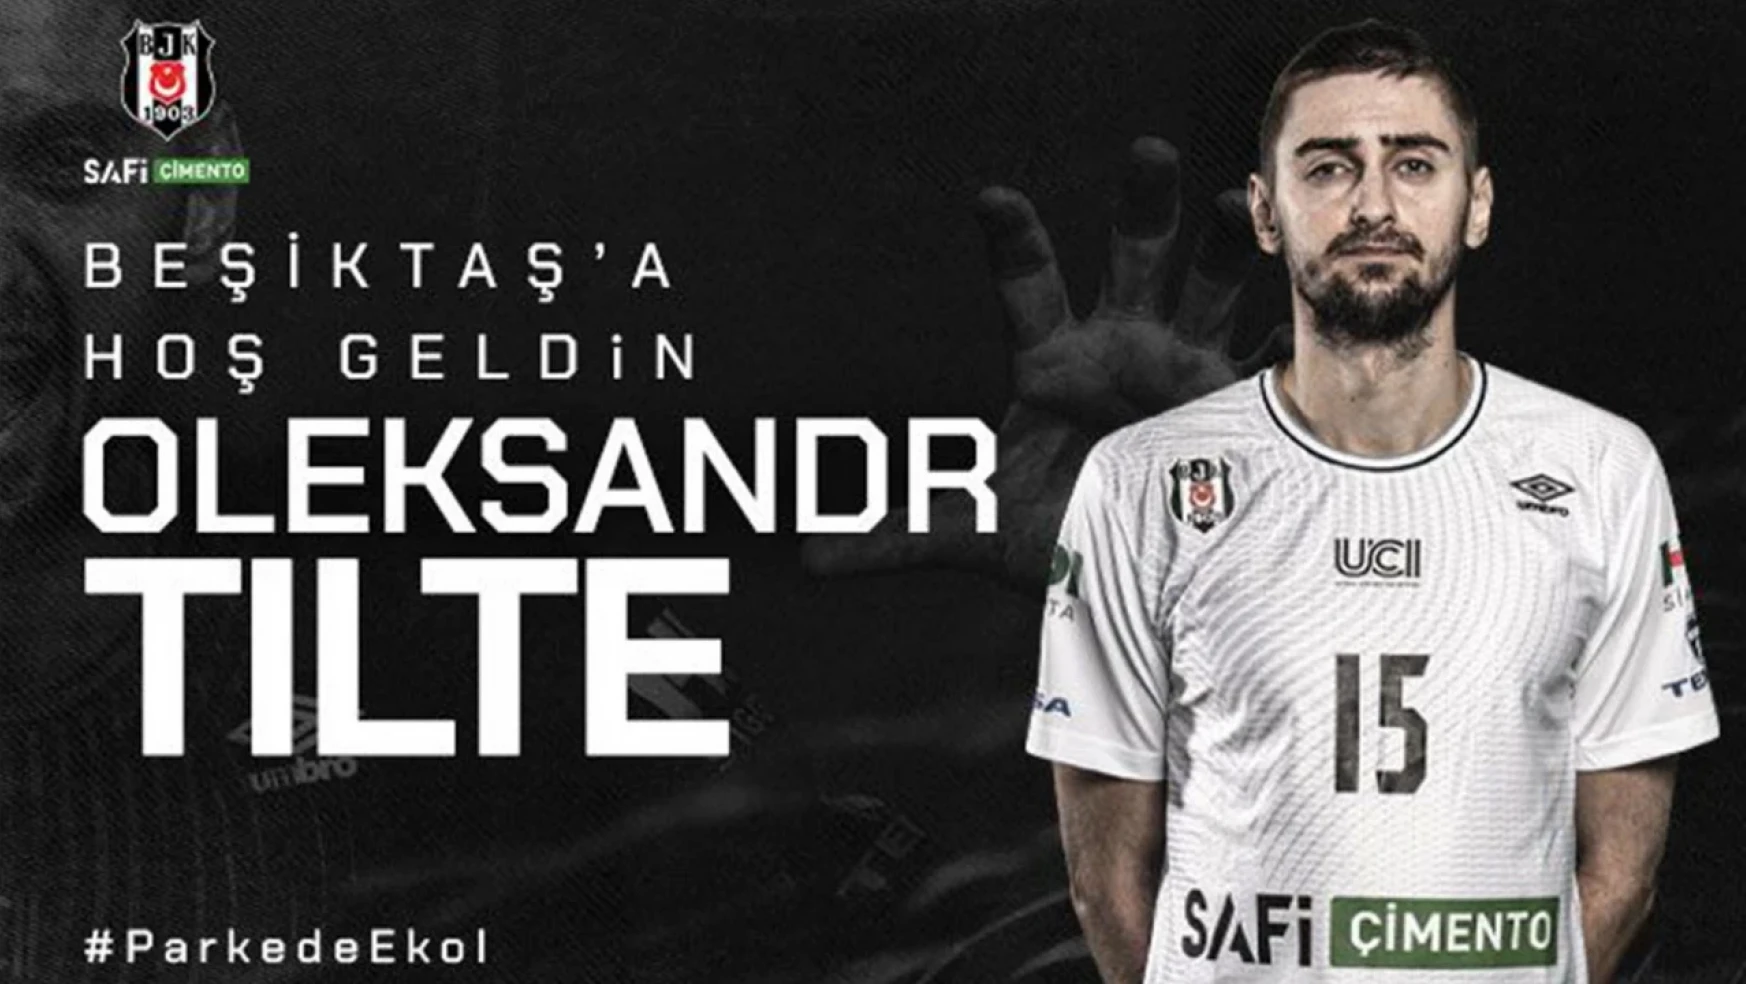 Oleksandr Tilte to join Beşiktaş Safi Çimento